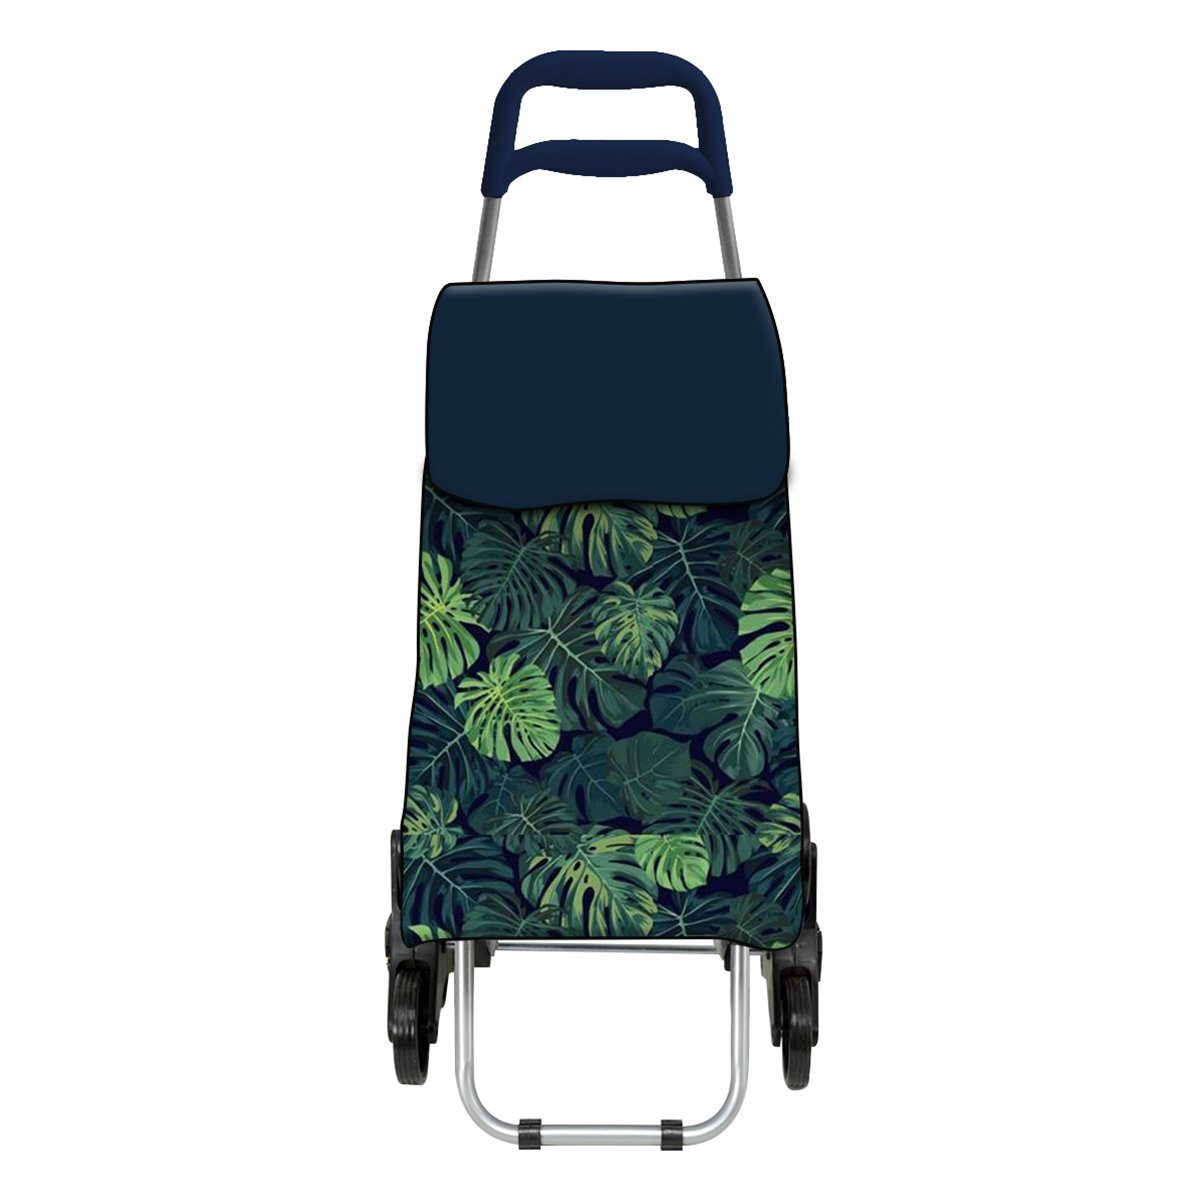 ADOB Einkaufstrolley Tropische Blätter, 50 l, geräuscharme Räder, Reissverschlussfach auf Rückseite, leicht (1,8 kg)